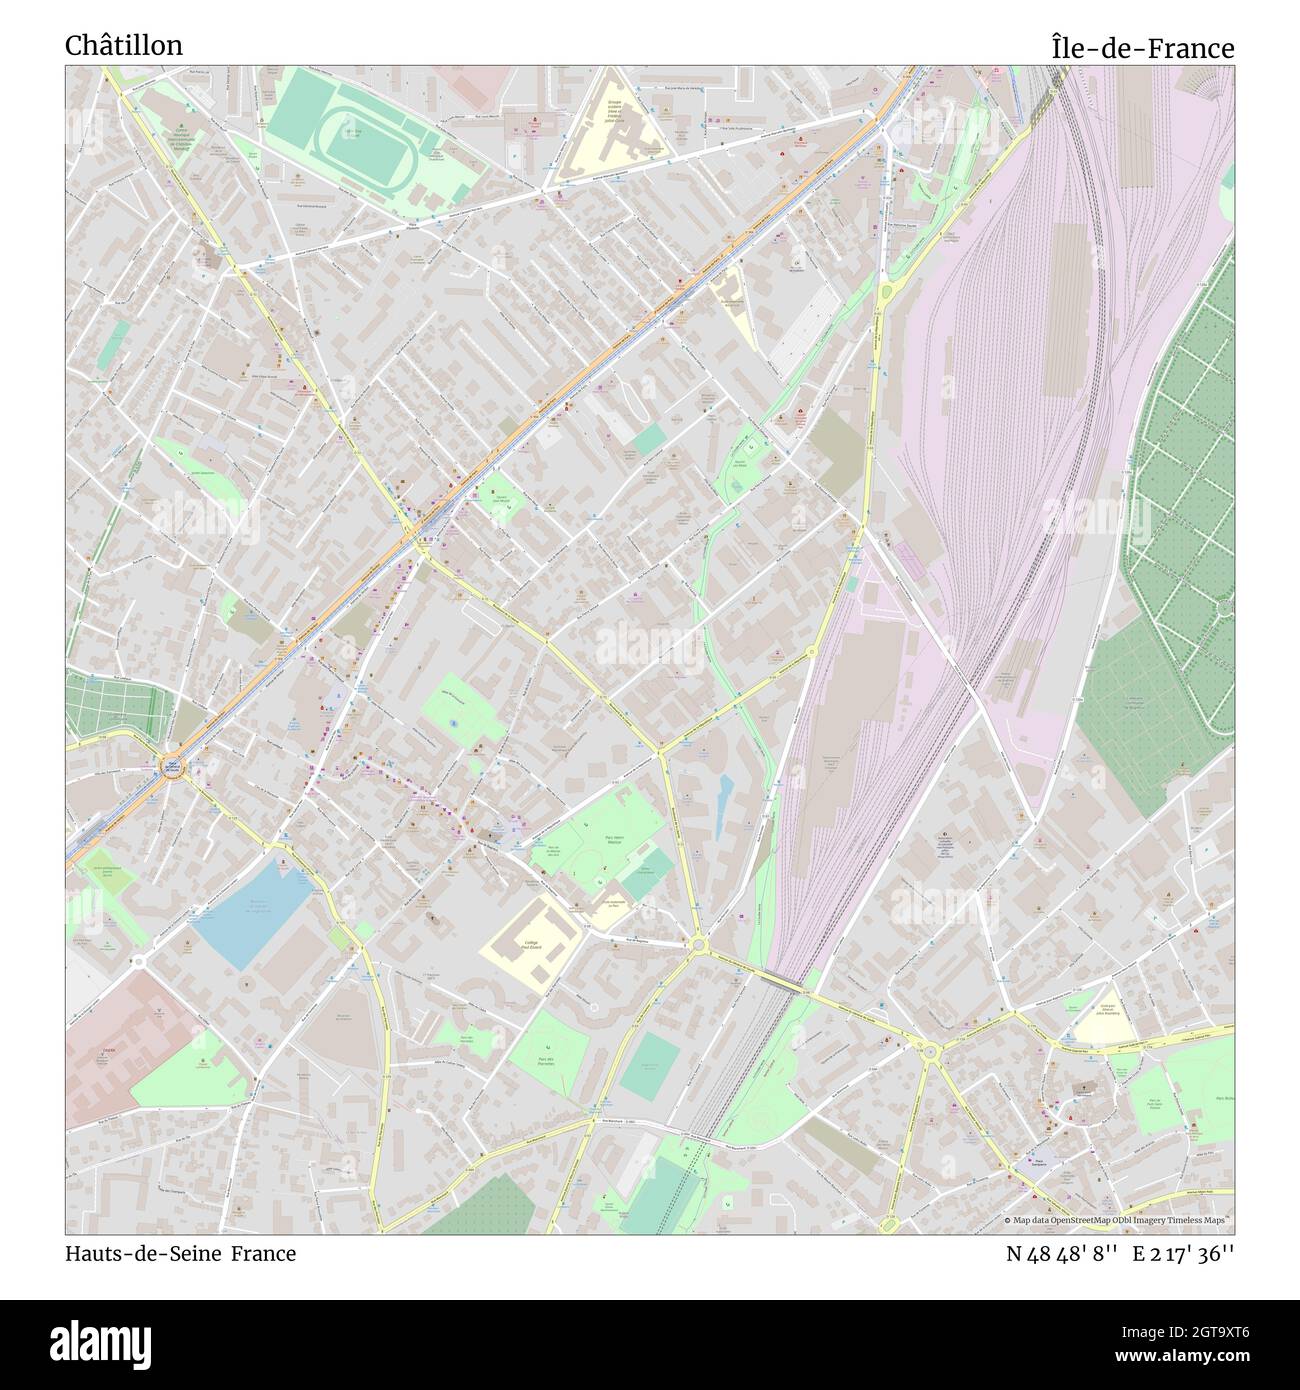 ASNIÈRES RUEIL-MALMAISON Nanterre Neuilly Courbevoie Hauts-de-Seine 1900 map 